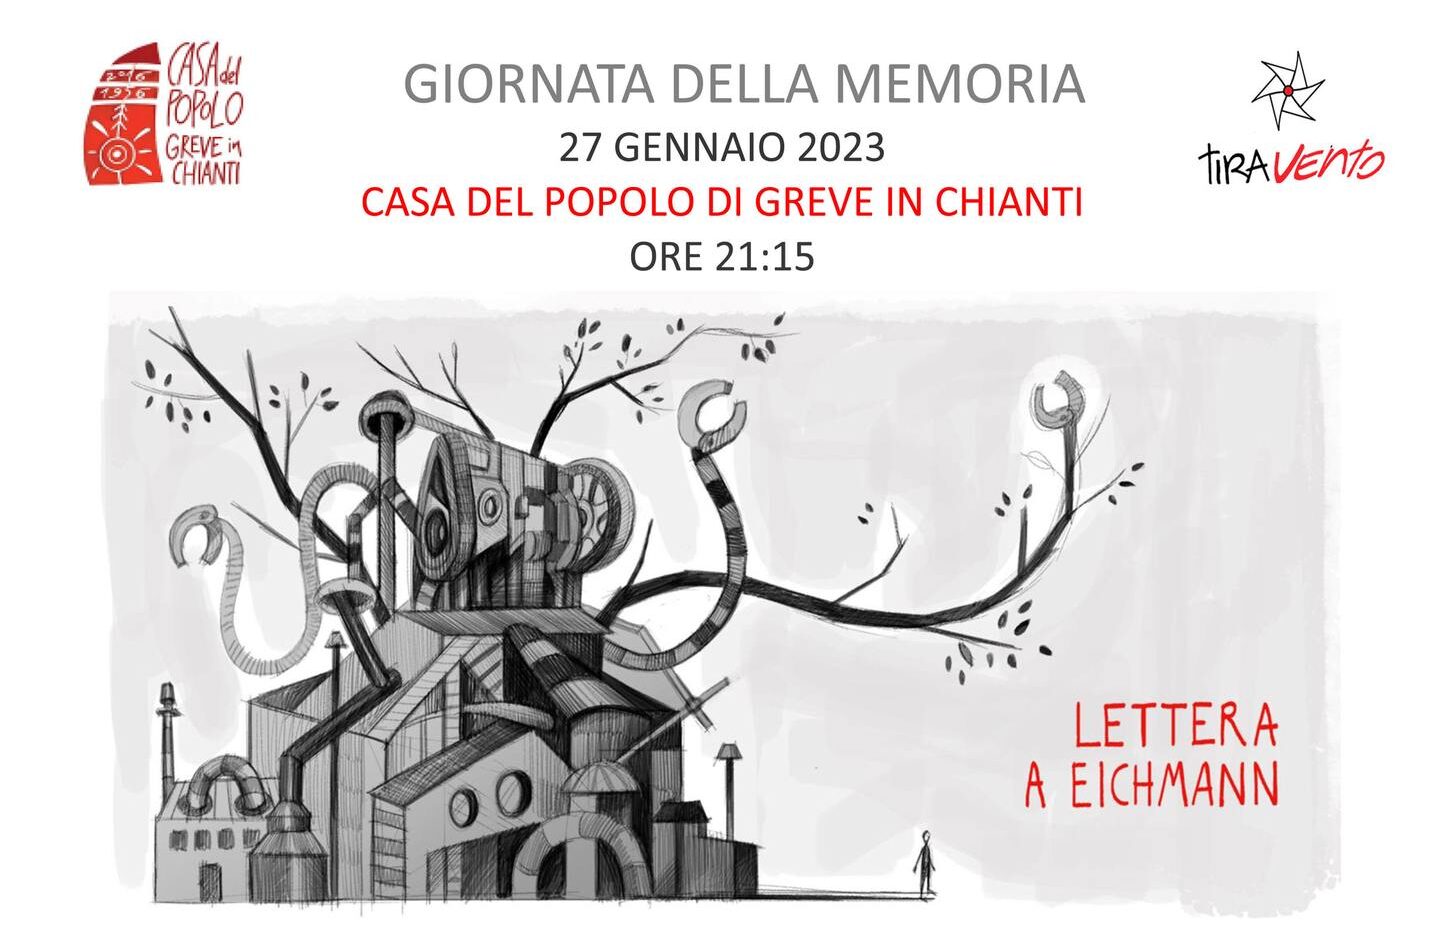 Giornata della Memoria: “Lettera a Eichmann” in scena alla Casa del Popolo di Greve in Chianti